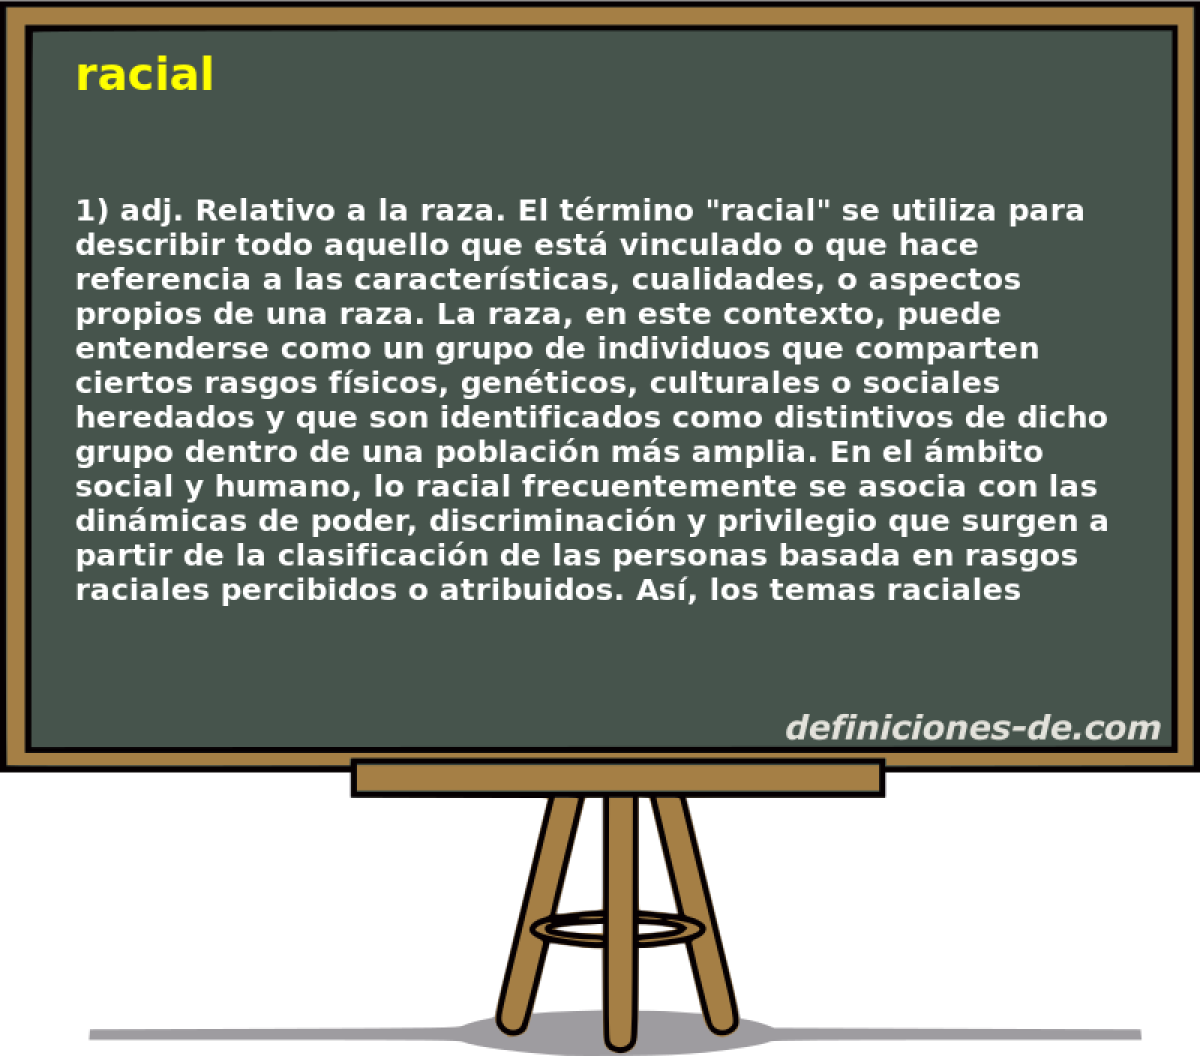 racial 